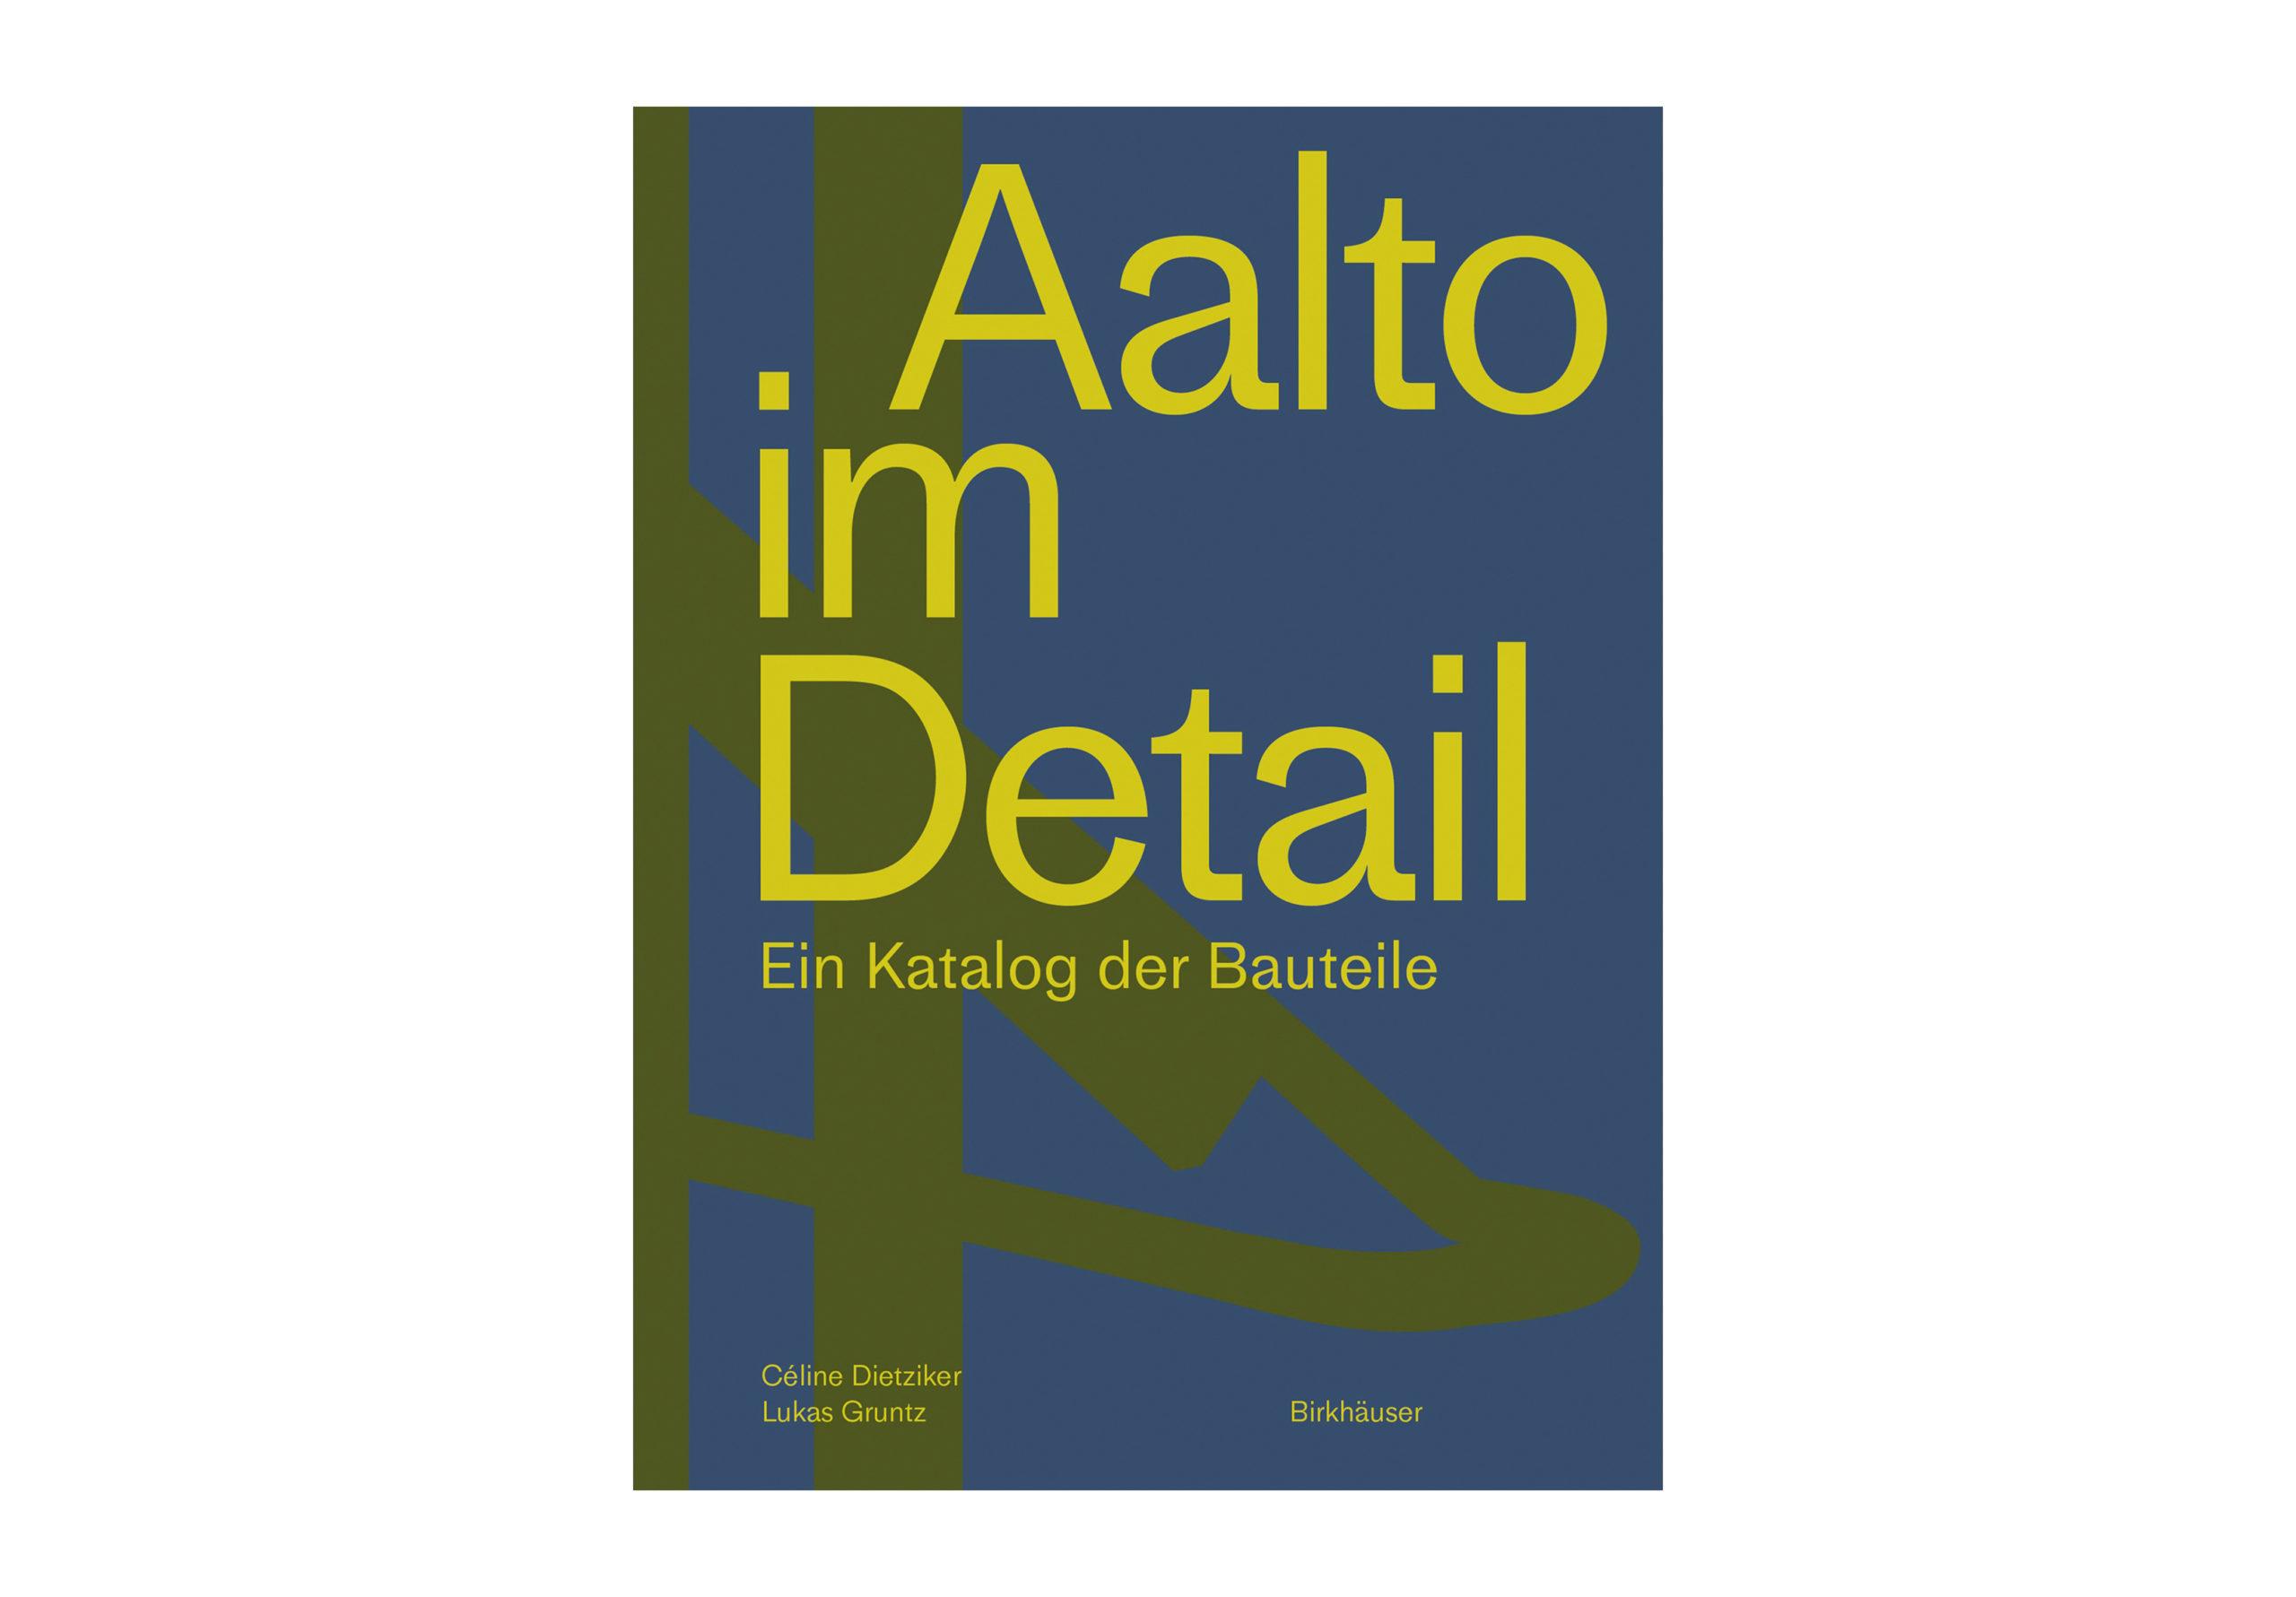 Aalto im Detail | Buchvernissage und Ausstellung